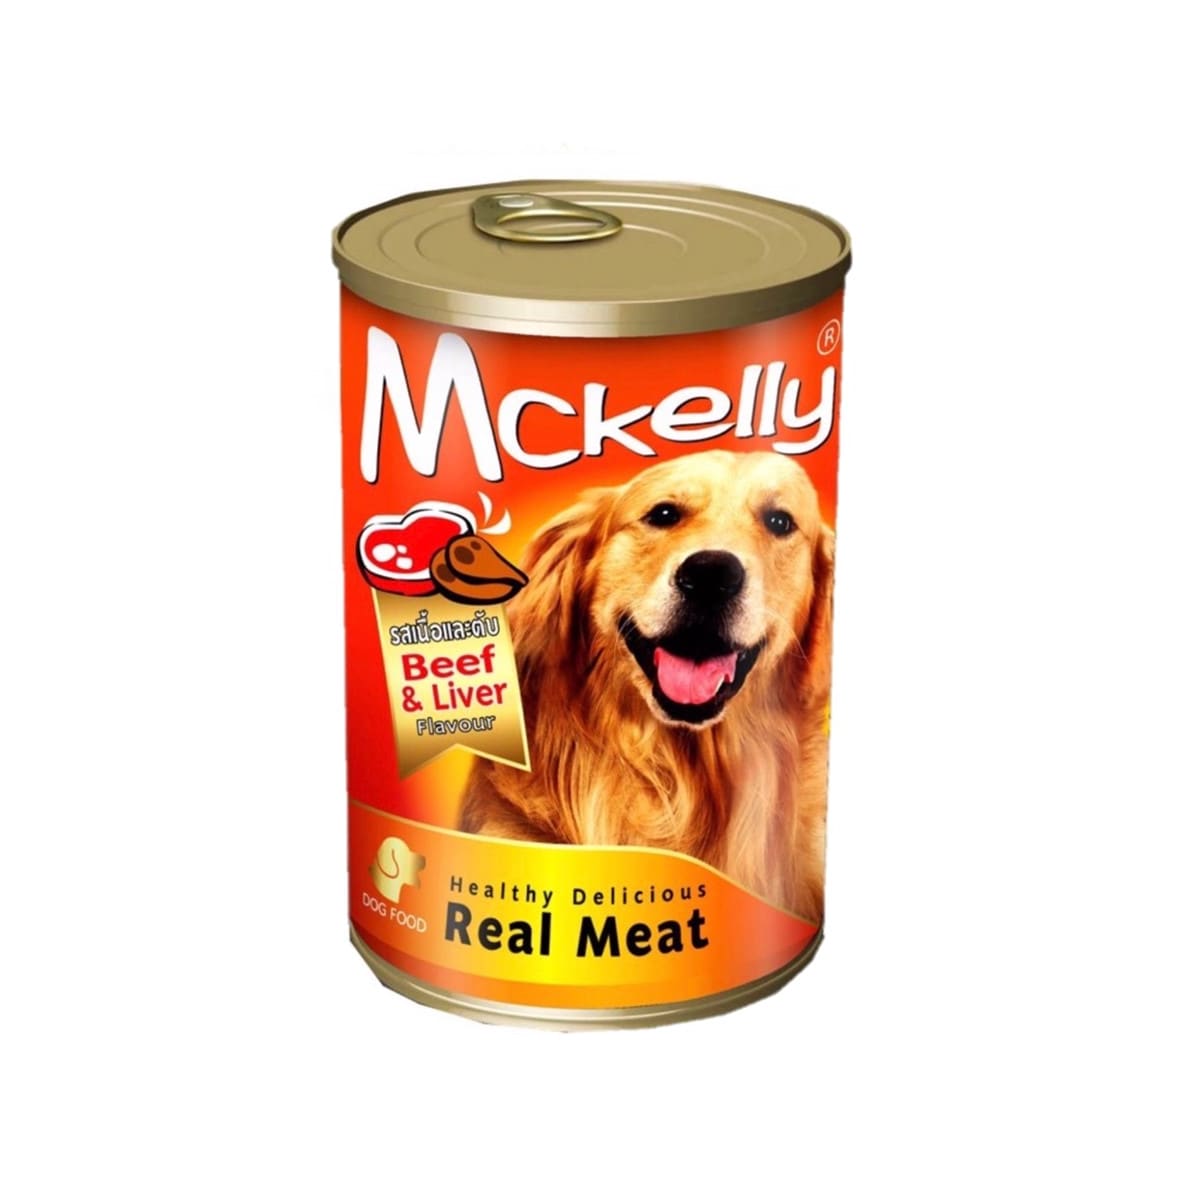 Mckelly แมคเคลลี่ อาหารเปียก แบบกระป๋อง สำหรับสุนัข สูตรเนื้อและตับ 400 g_10